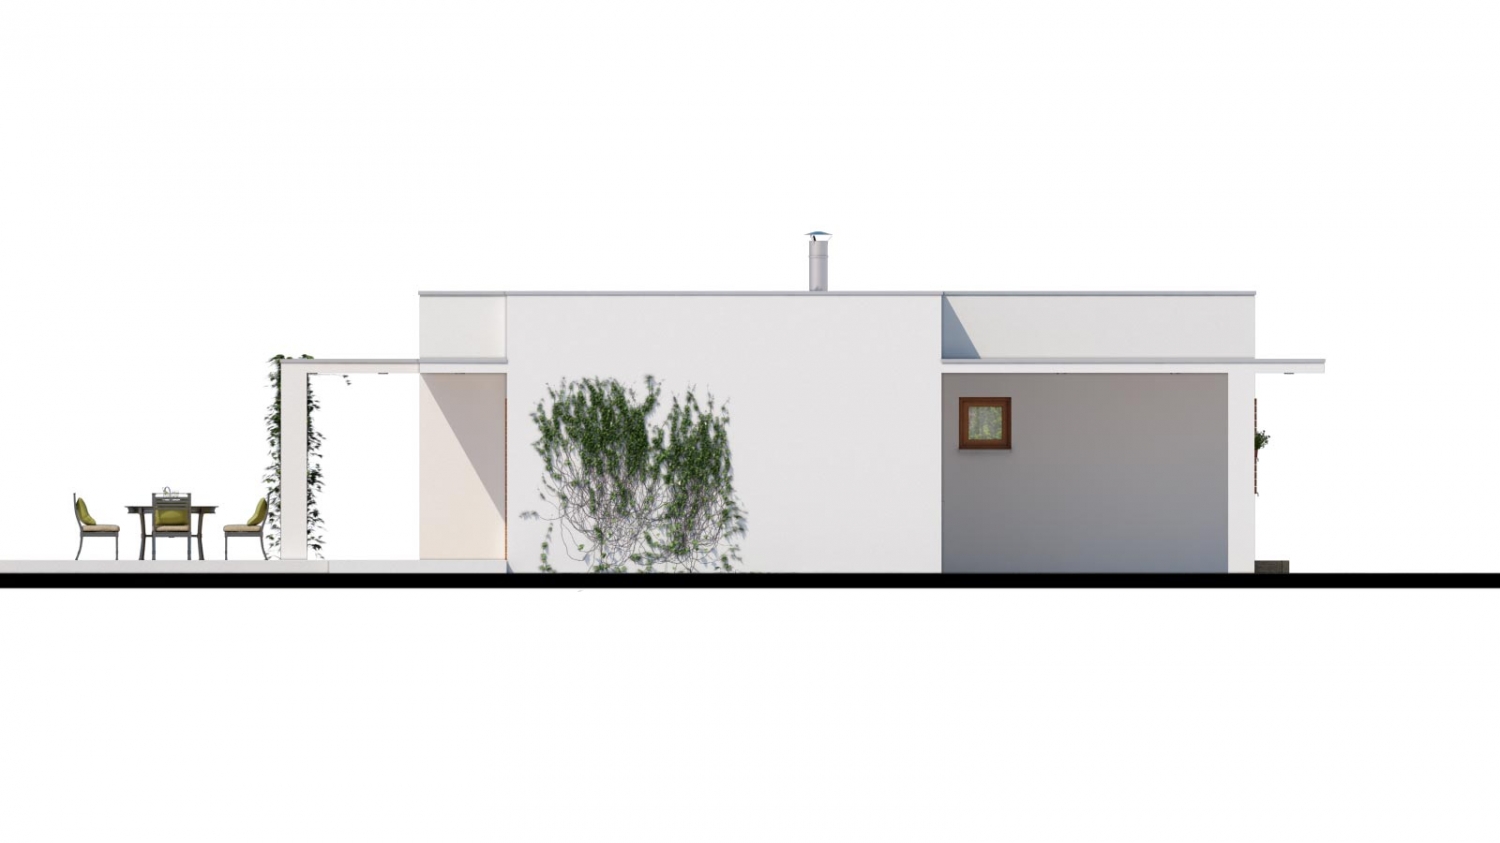 Pohľad 4. - Luxusní 4 - pokojový rodinný dům s plochou rovnou střechou a krytým stáním. Obytná část je orientována do zahrady na terasu.